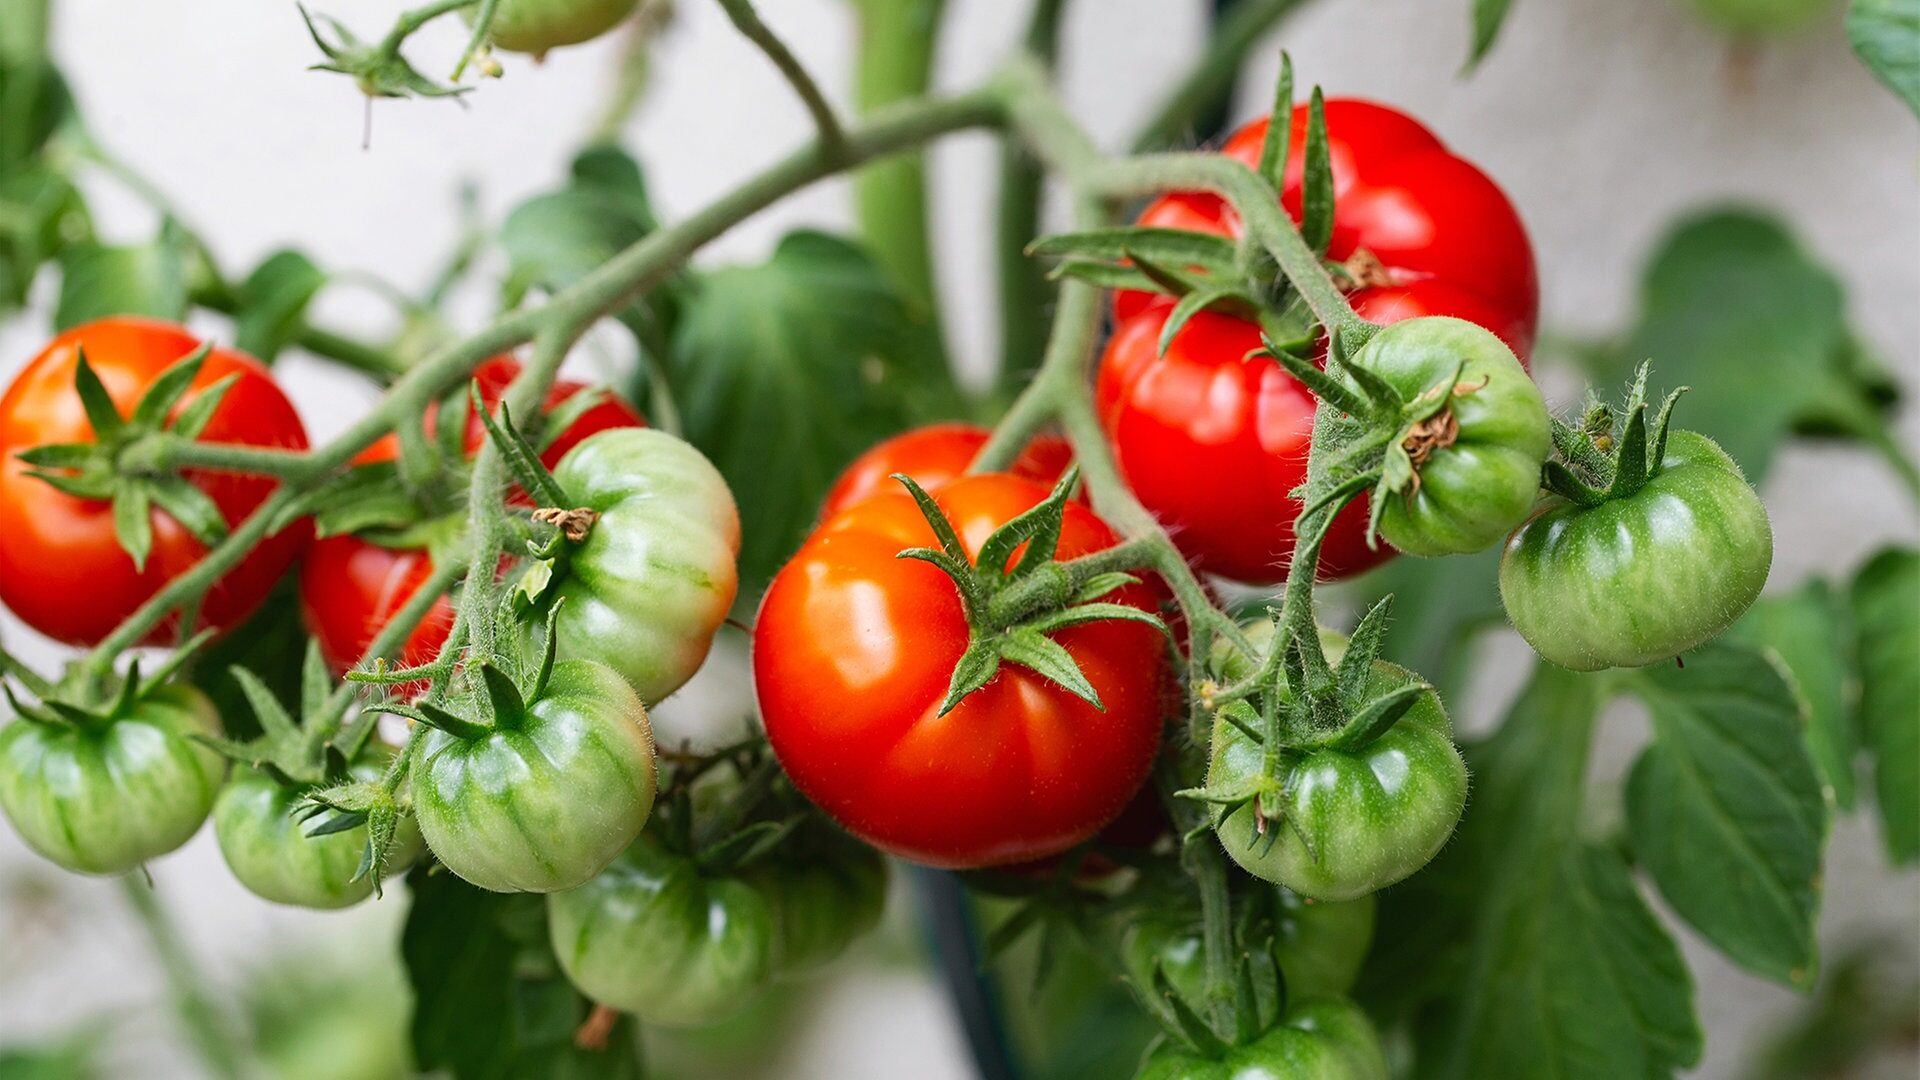 Um eine große Ernte zu erzielen, müssen Tomaten richtig gepflanzt werden – ein Schema zum Anpflanzen von Tomaten im Freiland